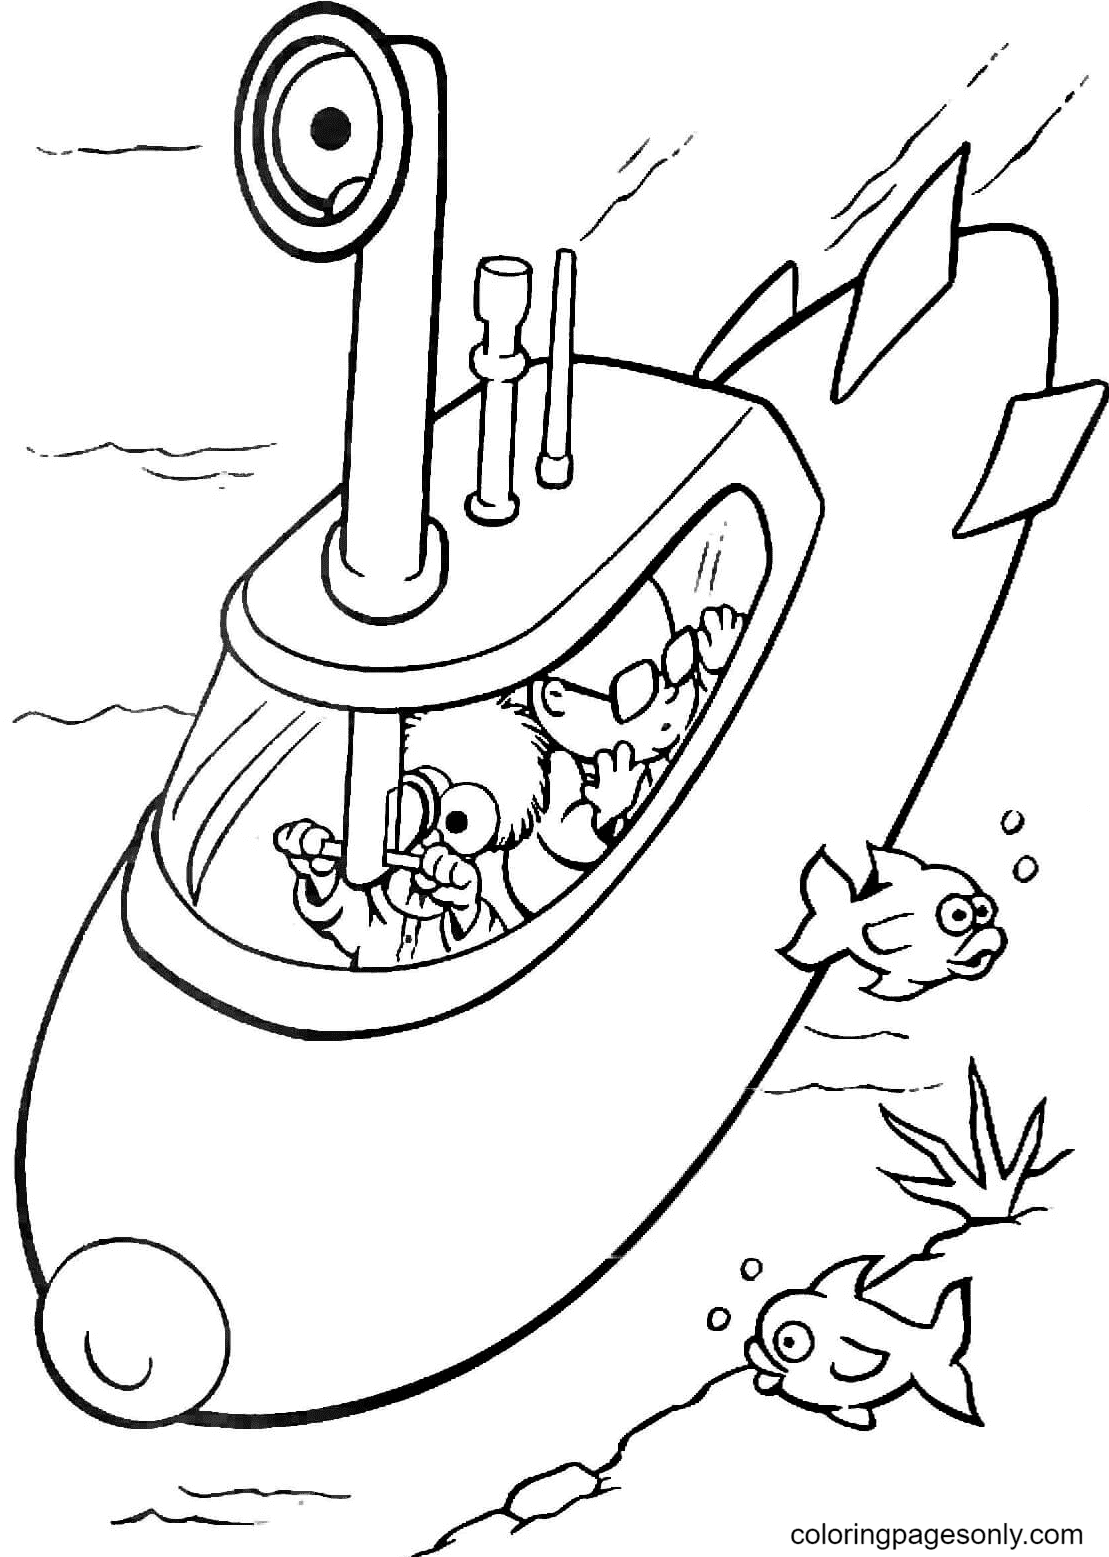 Becher und Bunsen auf einem U-Boot von Muppet Babies